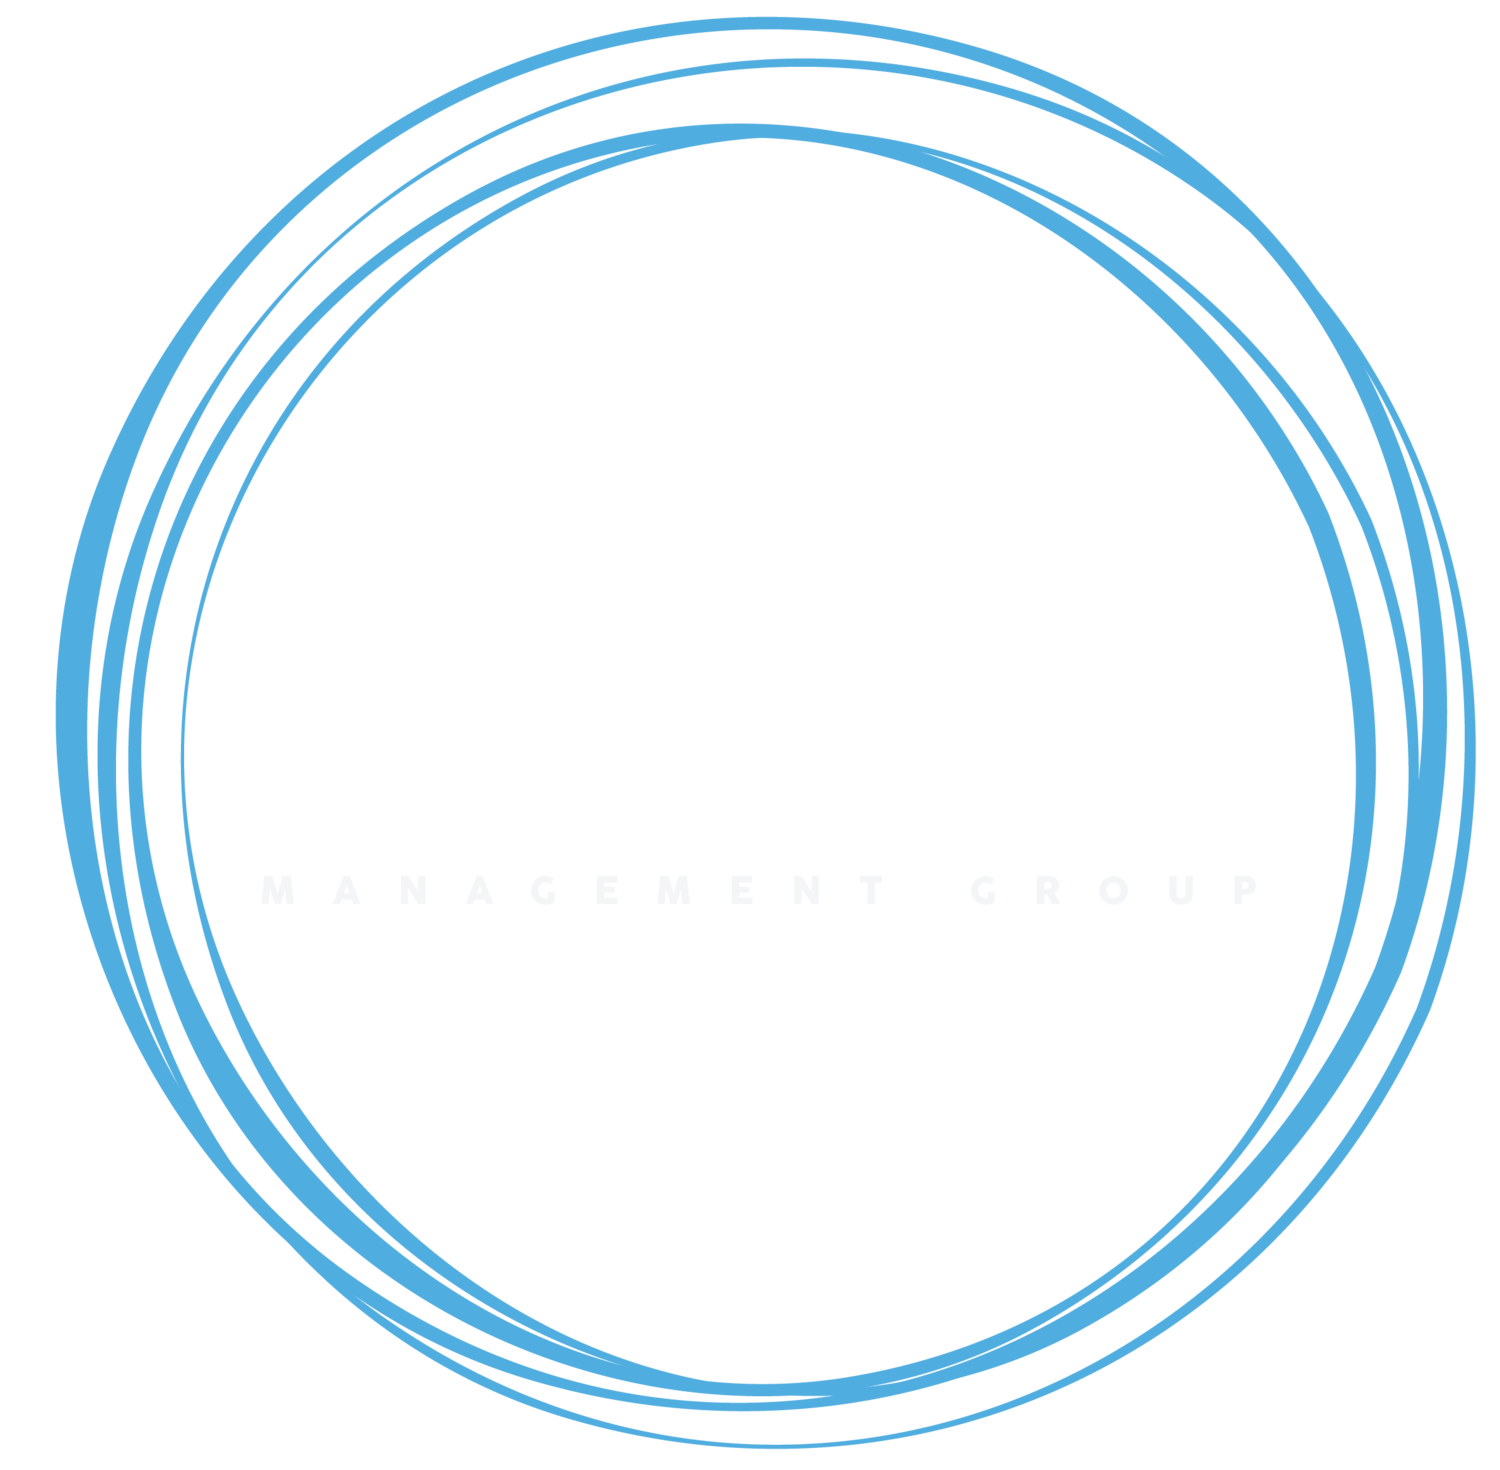 Current Management Group, Inc. 